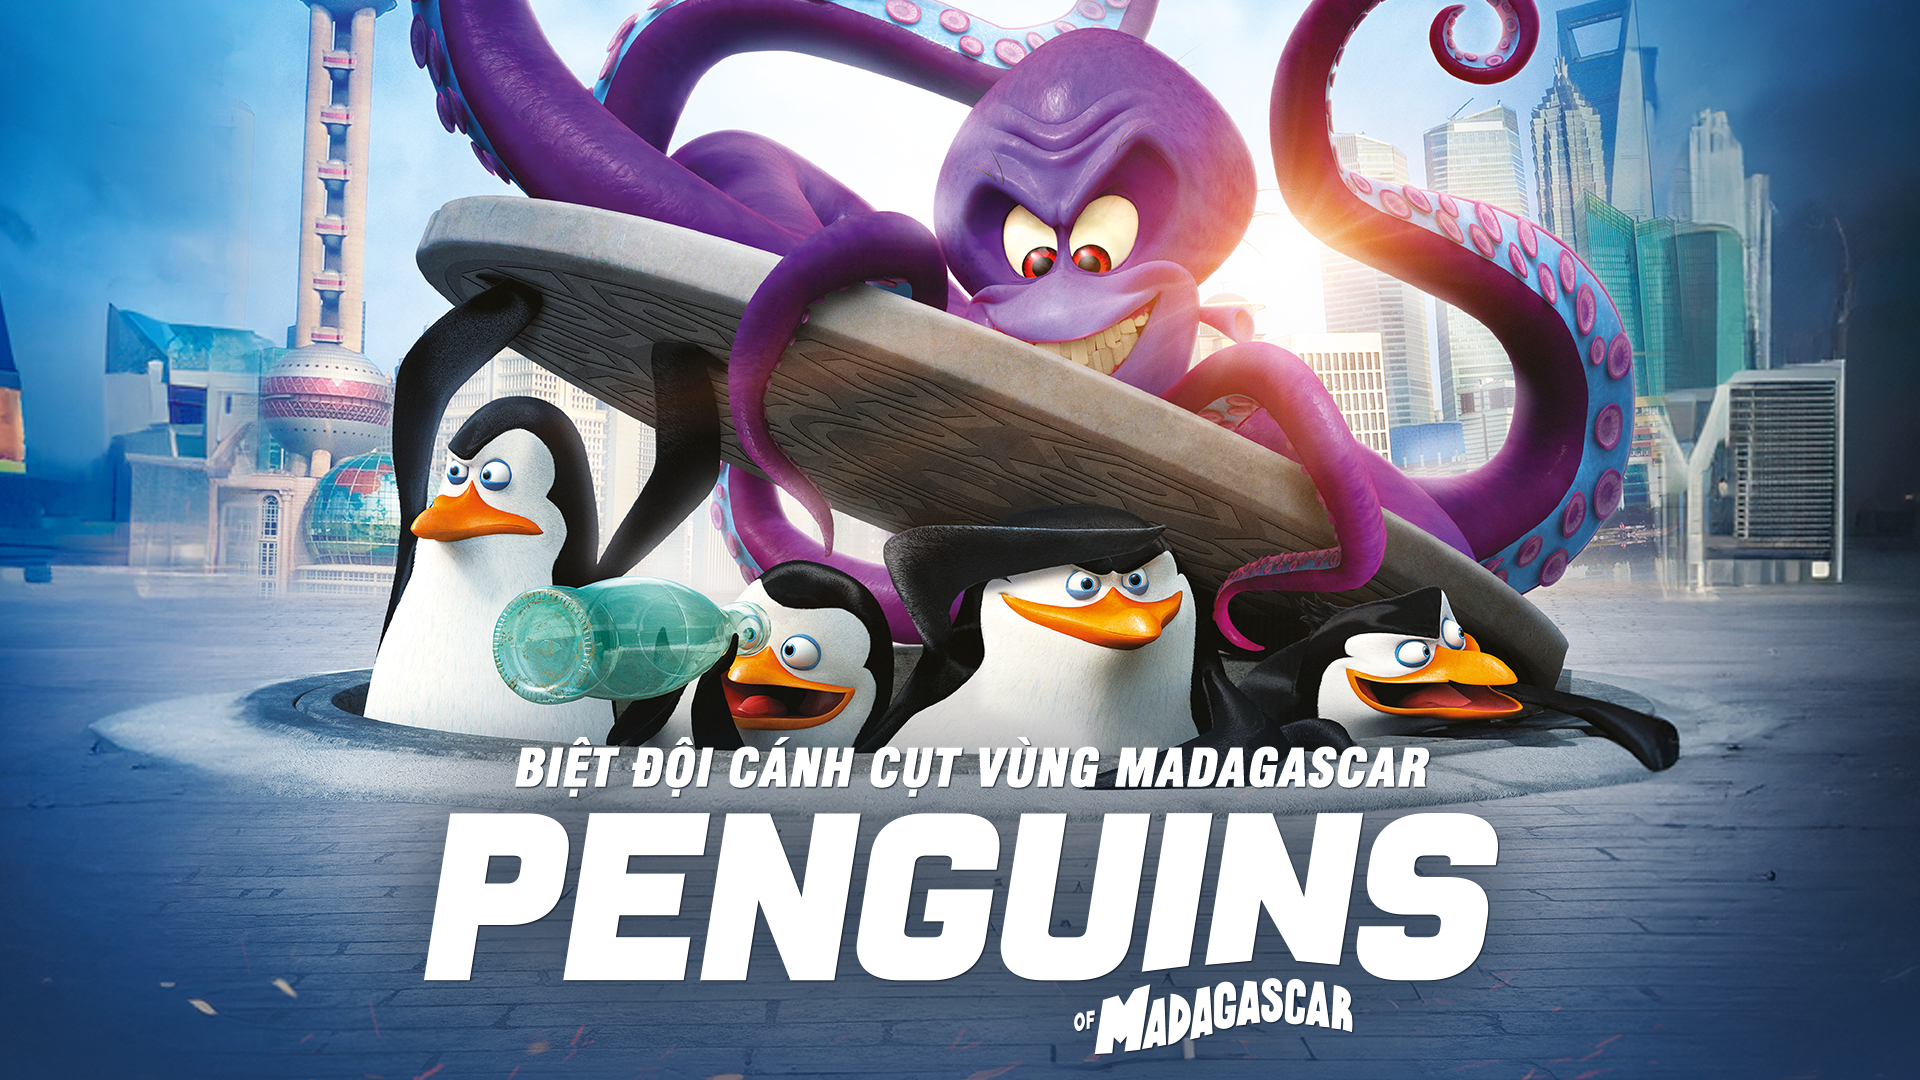 Xem Phim Biệt đội cánh cụt vùng Madagascar, Penguins of Madagascar: The Movie 2014